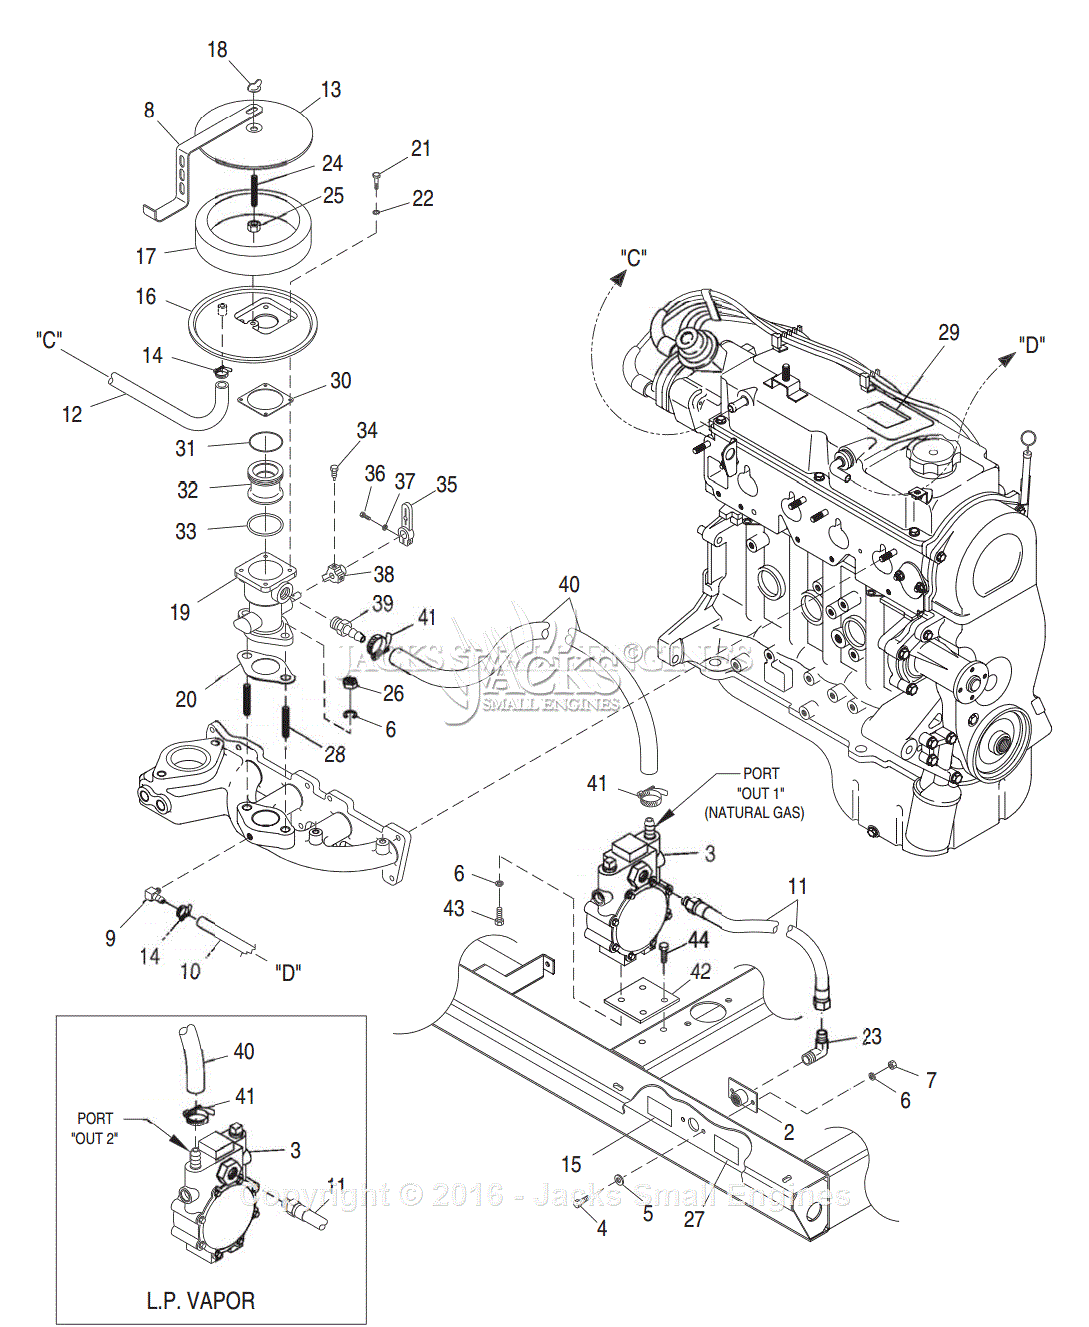 [DIAGRAM] Iveco Engine Fuel System Diagrams